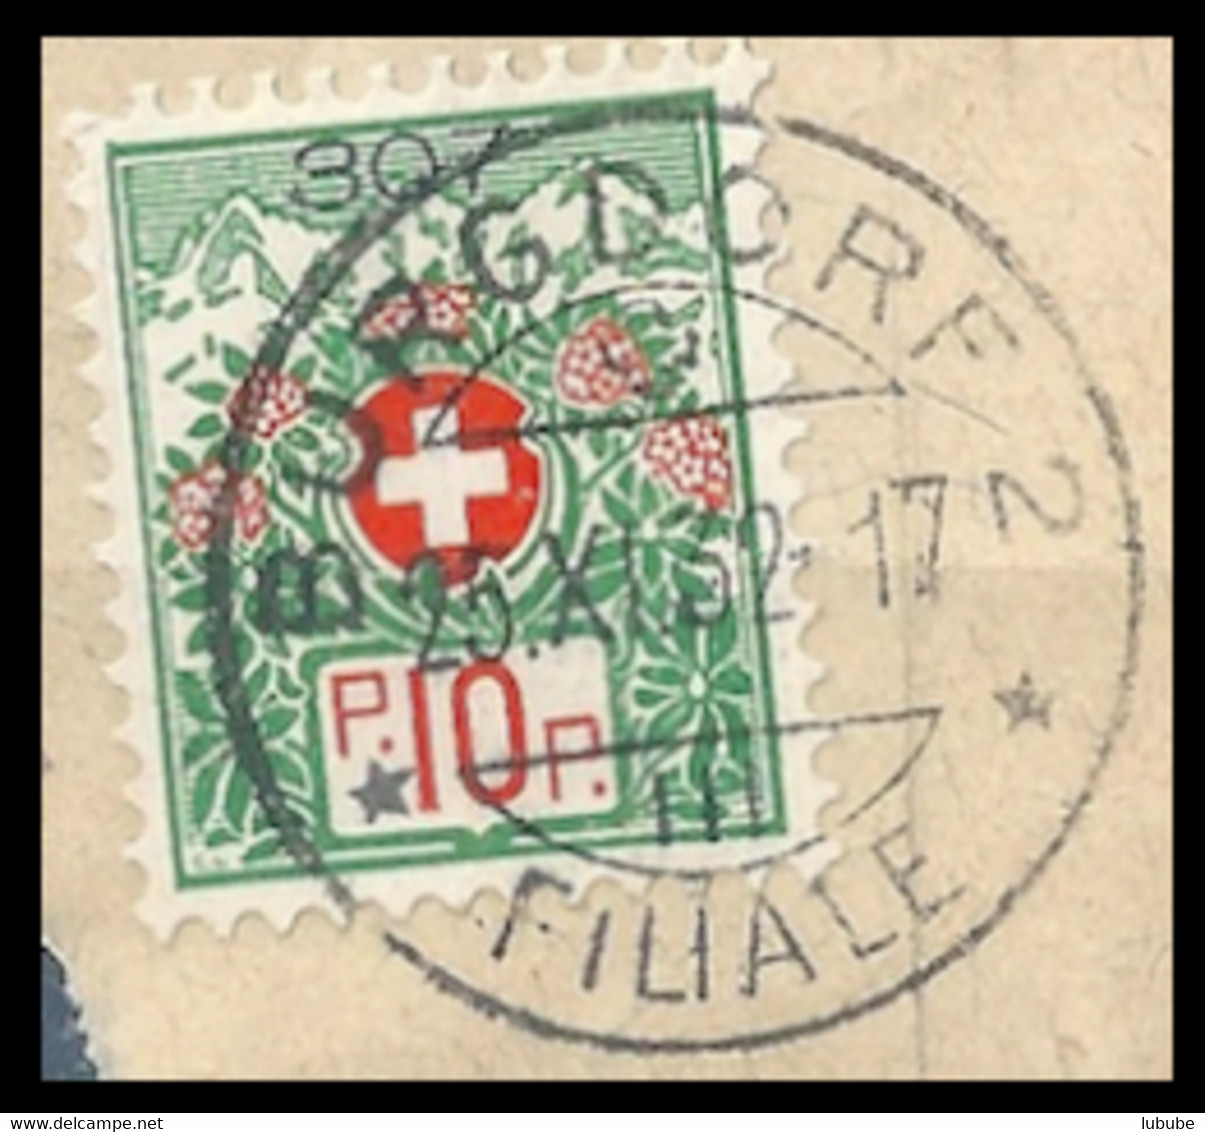 Portofreiheit 12A  "Burgdorf 2 Filiale"  (Kontrollzeichen 307 - Bezirks Krankenhaus)   1932 - Portofreiheit